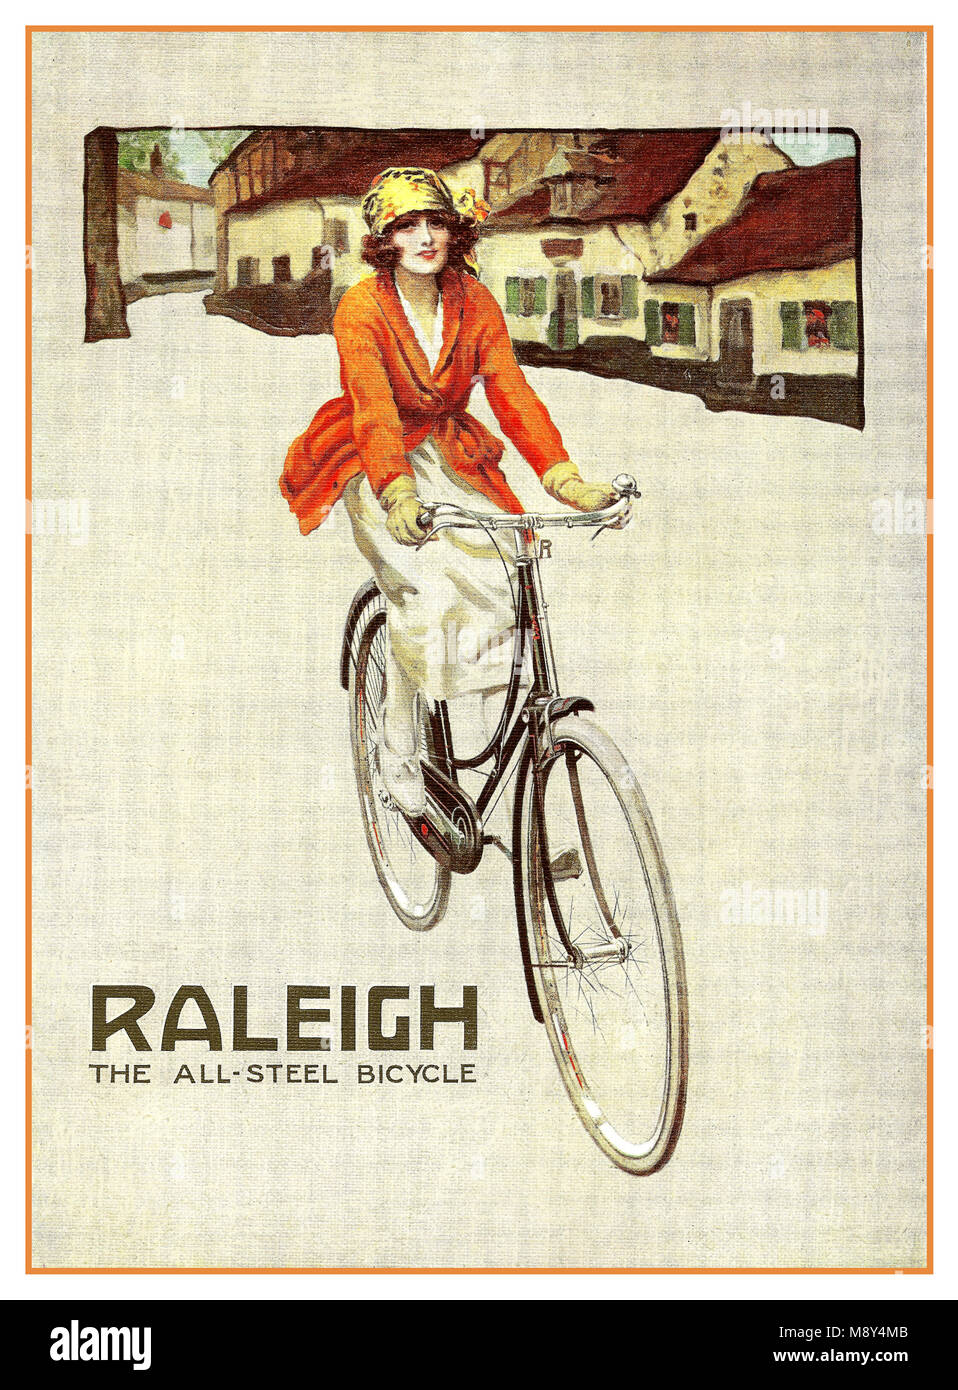 Vintage 1900's Raleigh tout en acier Location affiche publicitaire. Une  charmante petite annonce pour slogan de Raleigh - Raleigh le all-steel  Bicycle - pour la première fois en 1890 et utilisé pendant